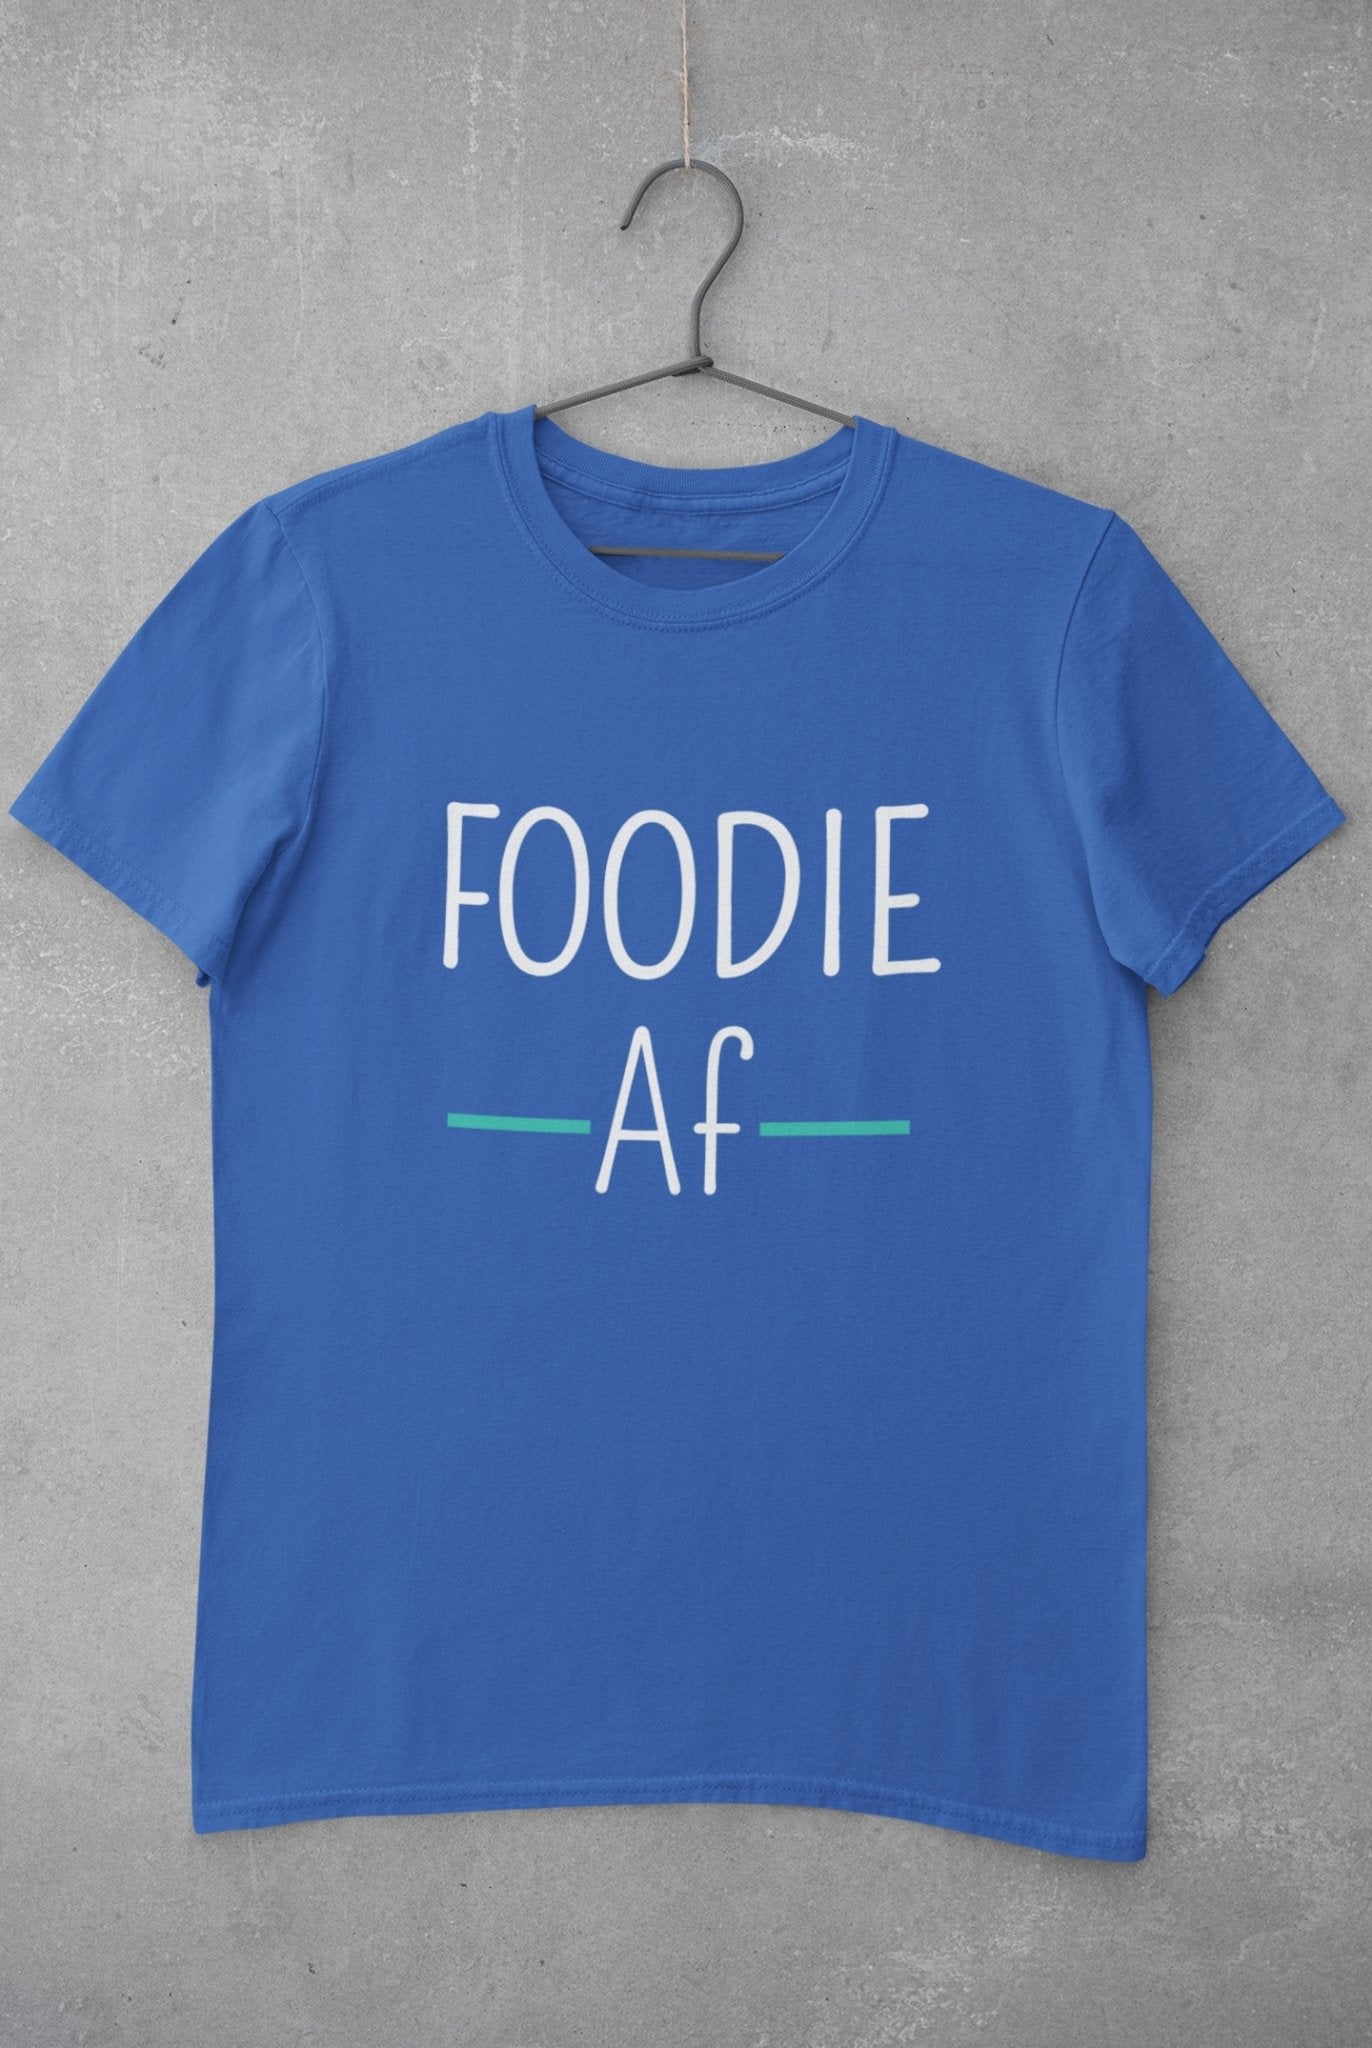 Foodie Af Women Half Sleeves T-shirt- FunkyTeesClub - Funky Tees Club